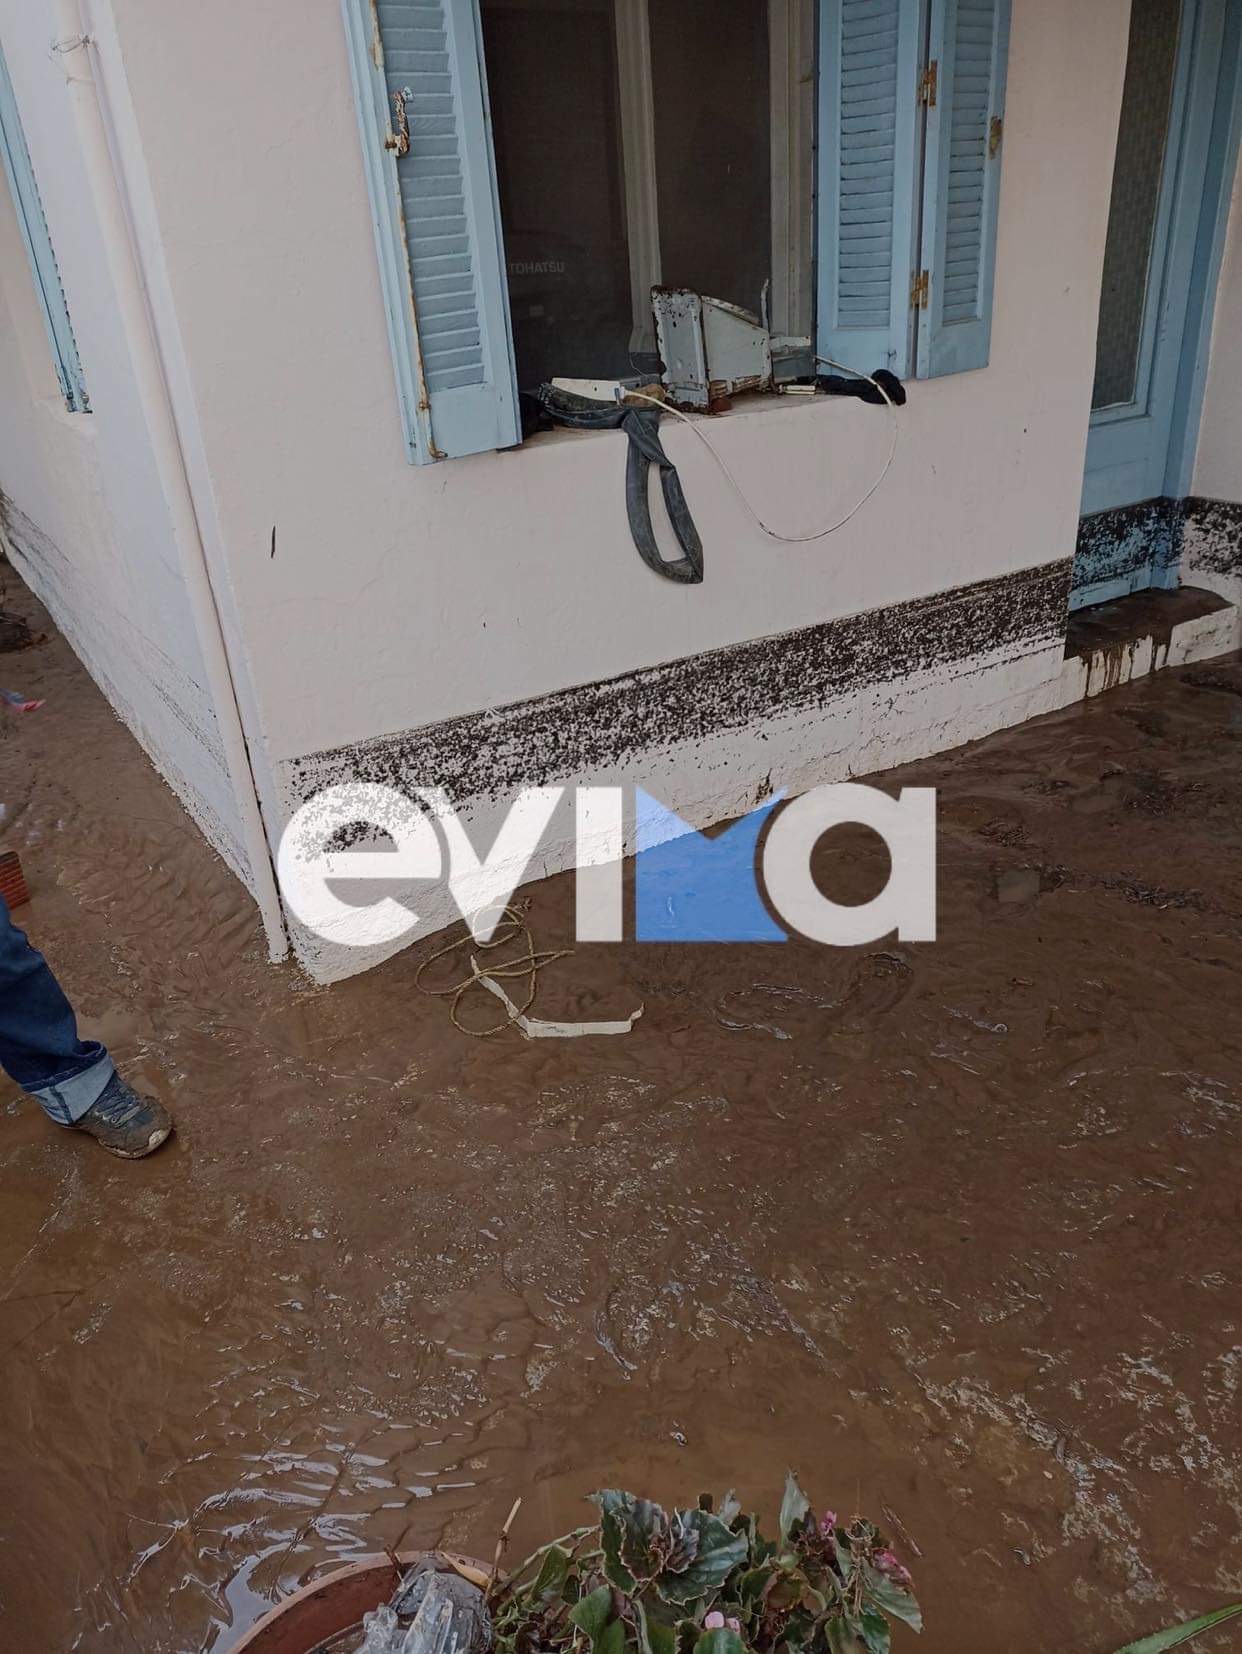 Τσαπουρνιώτης: Εκταμιεύτηκαν τα χρήματα για τους πλημμυροπαθείς του Δήμου Μαντουδίου Λίμνης Αγίας Άννας